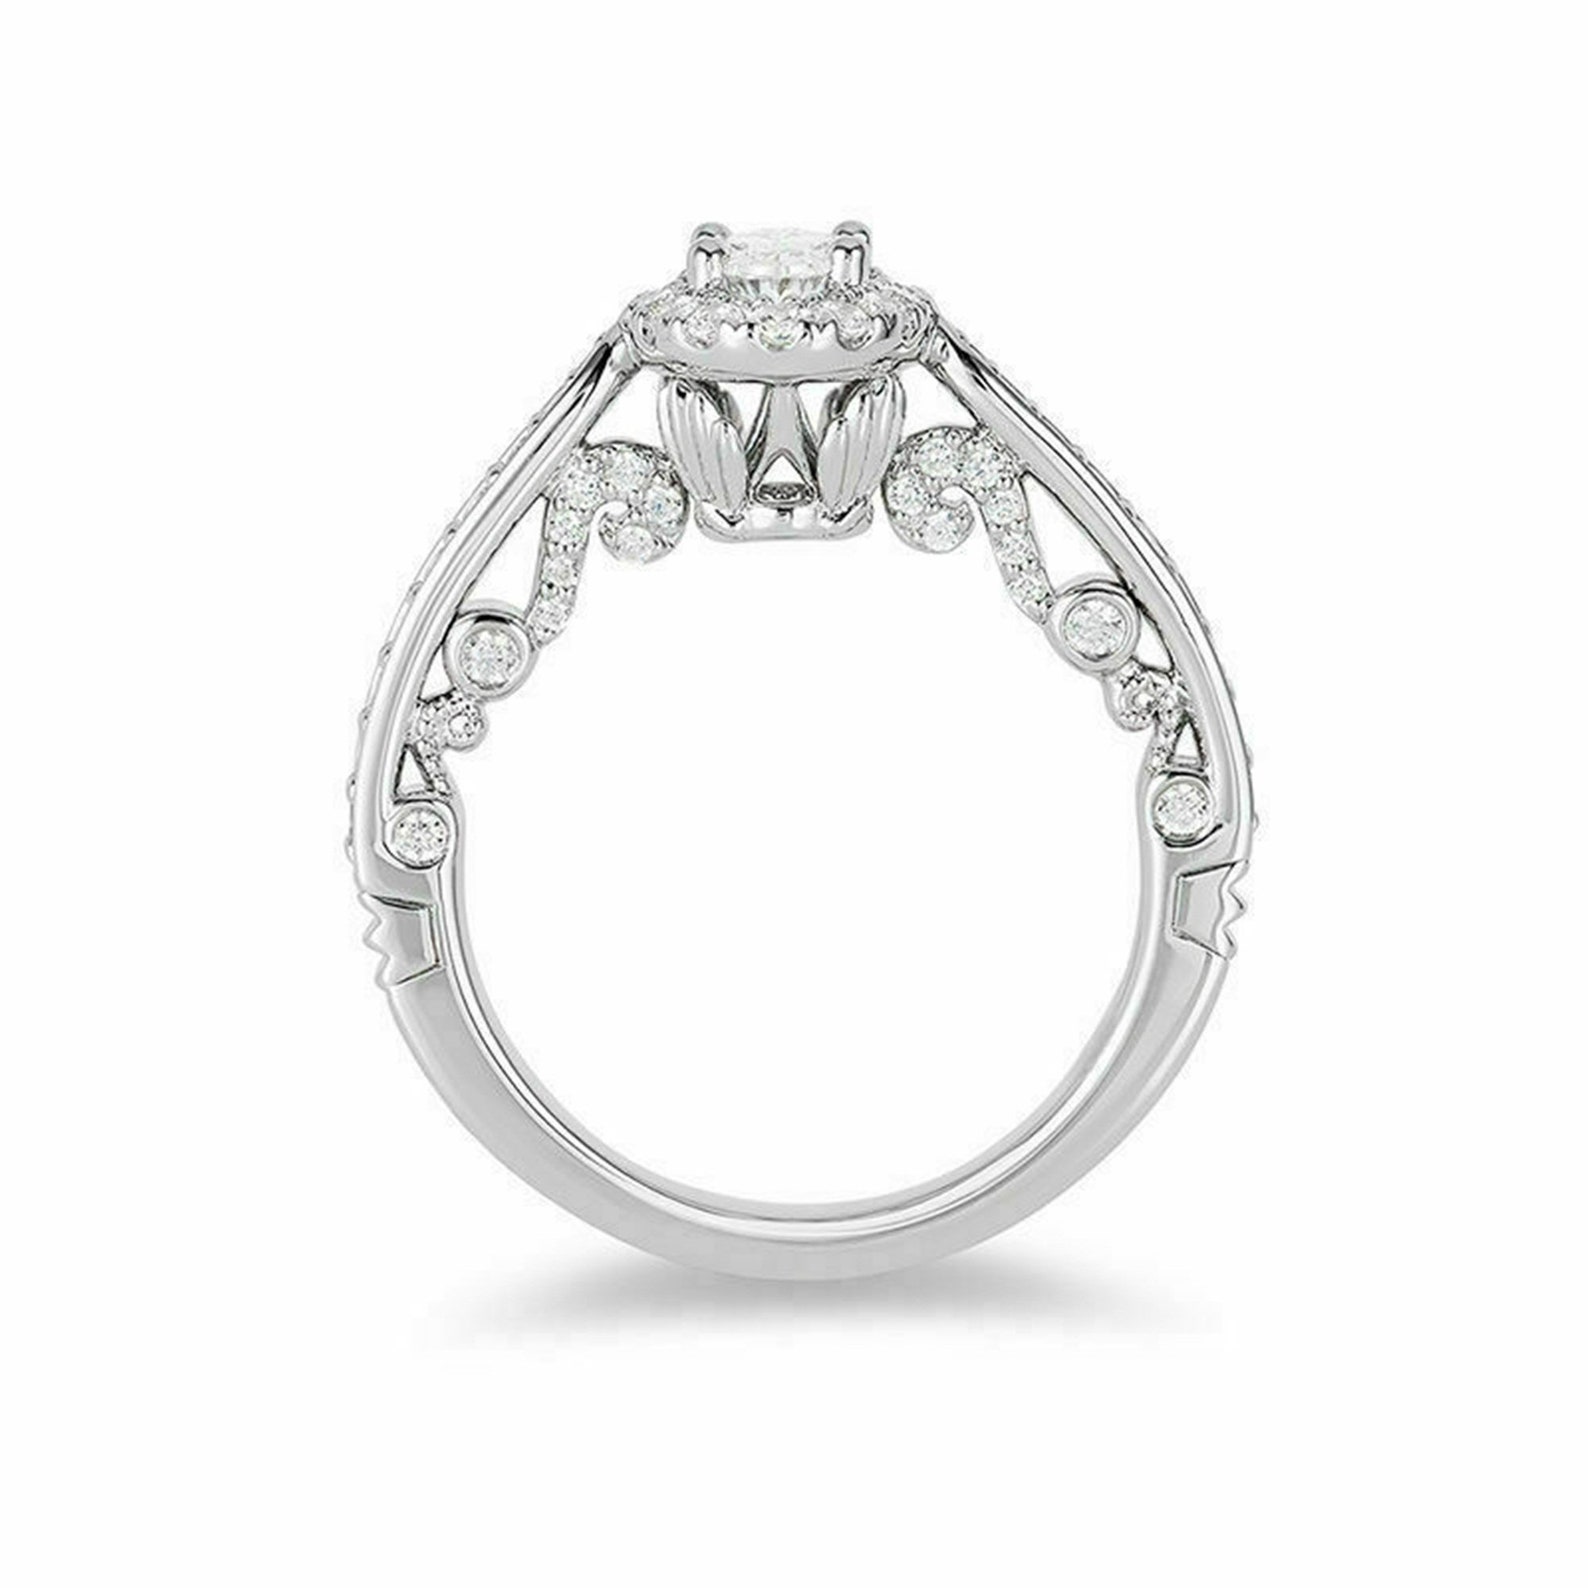 Enchanted Disney Ariel Wedding Ring / White Oval Cut